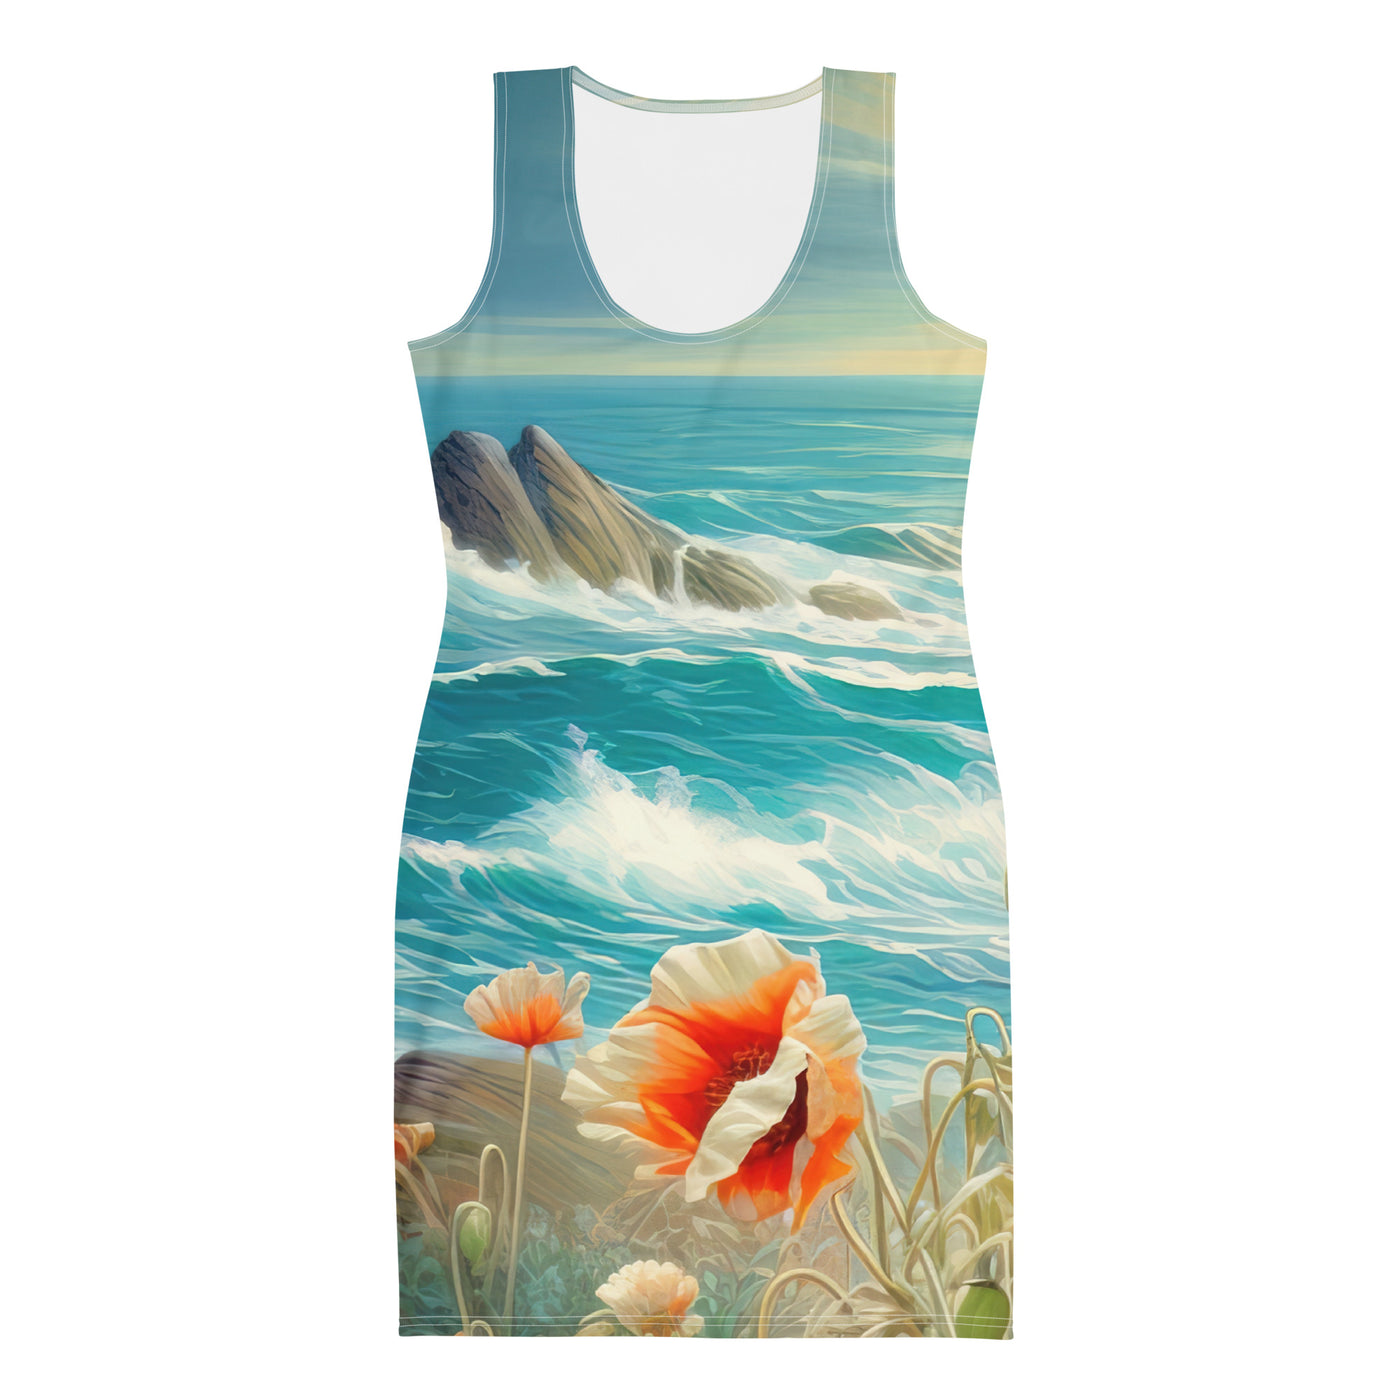 Blumen, Meer und Sonne - Malerei - Langes Damen Kleid (All-Over Print) camping xxx